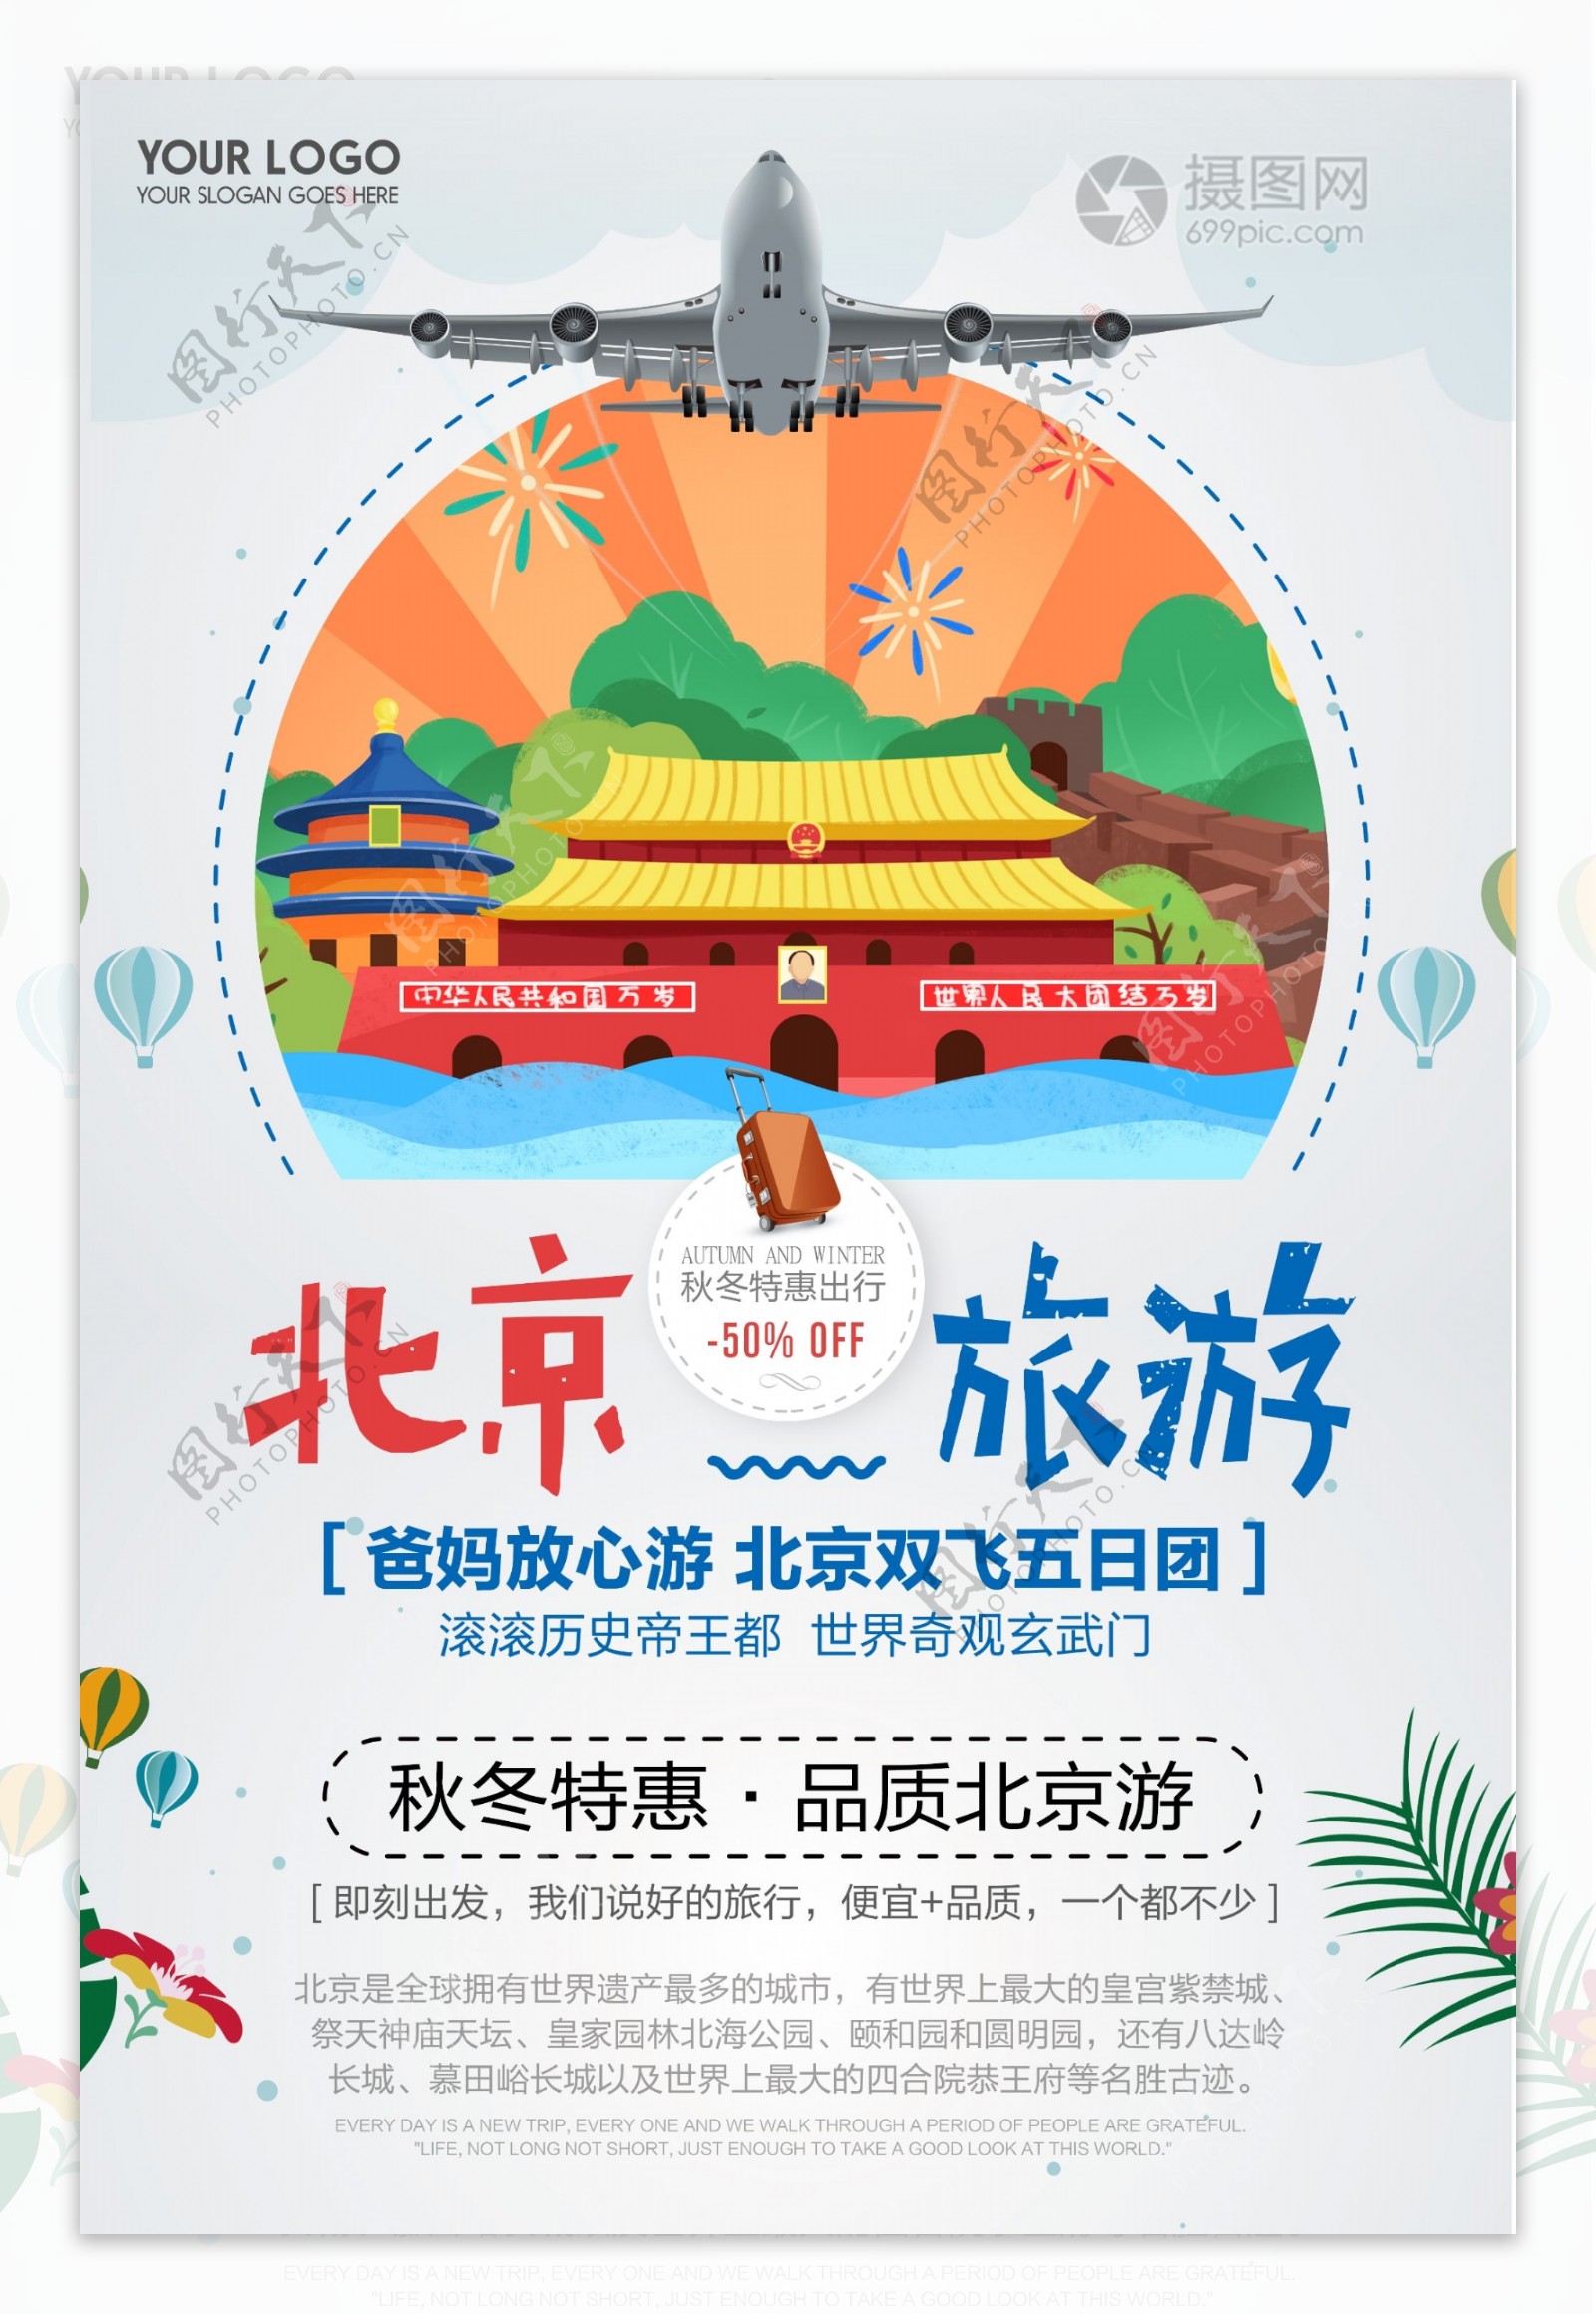 简约北京旅游秋冬特惠宣传海报